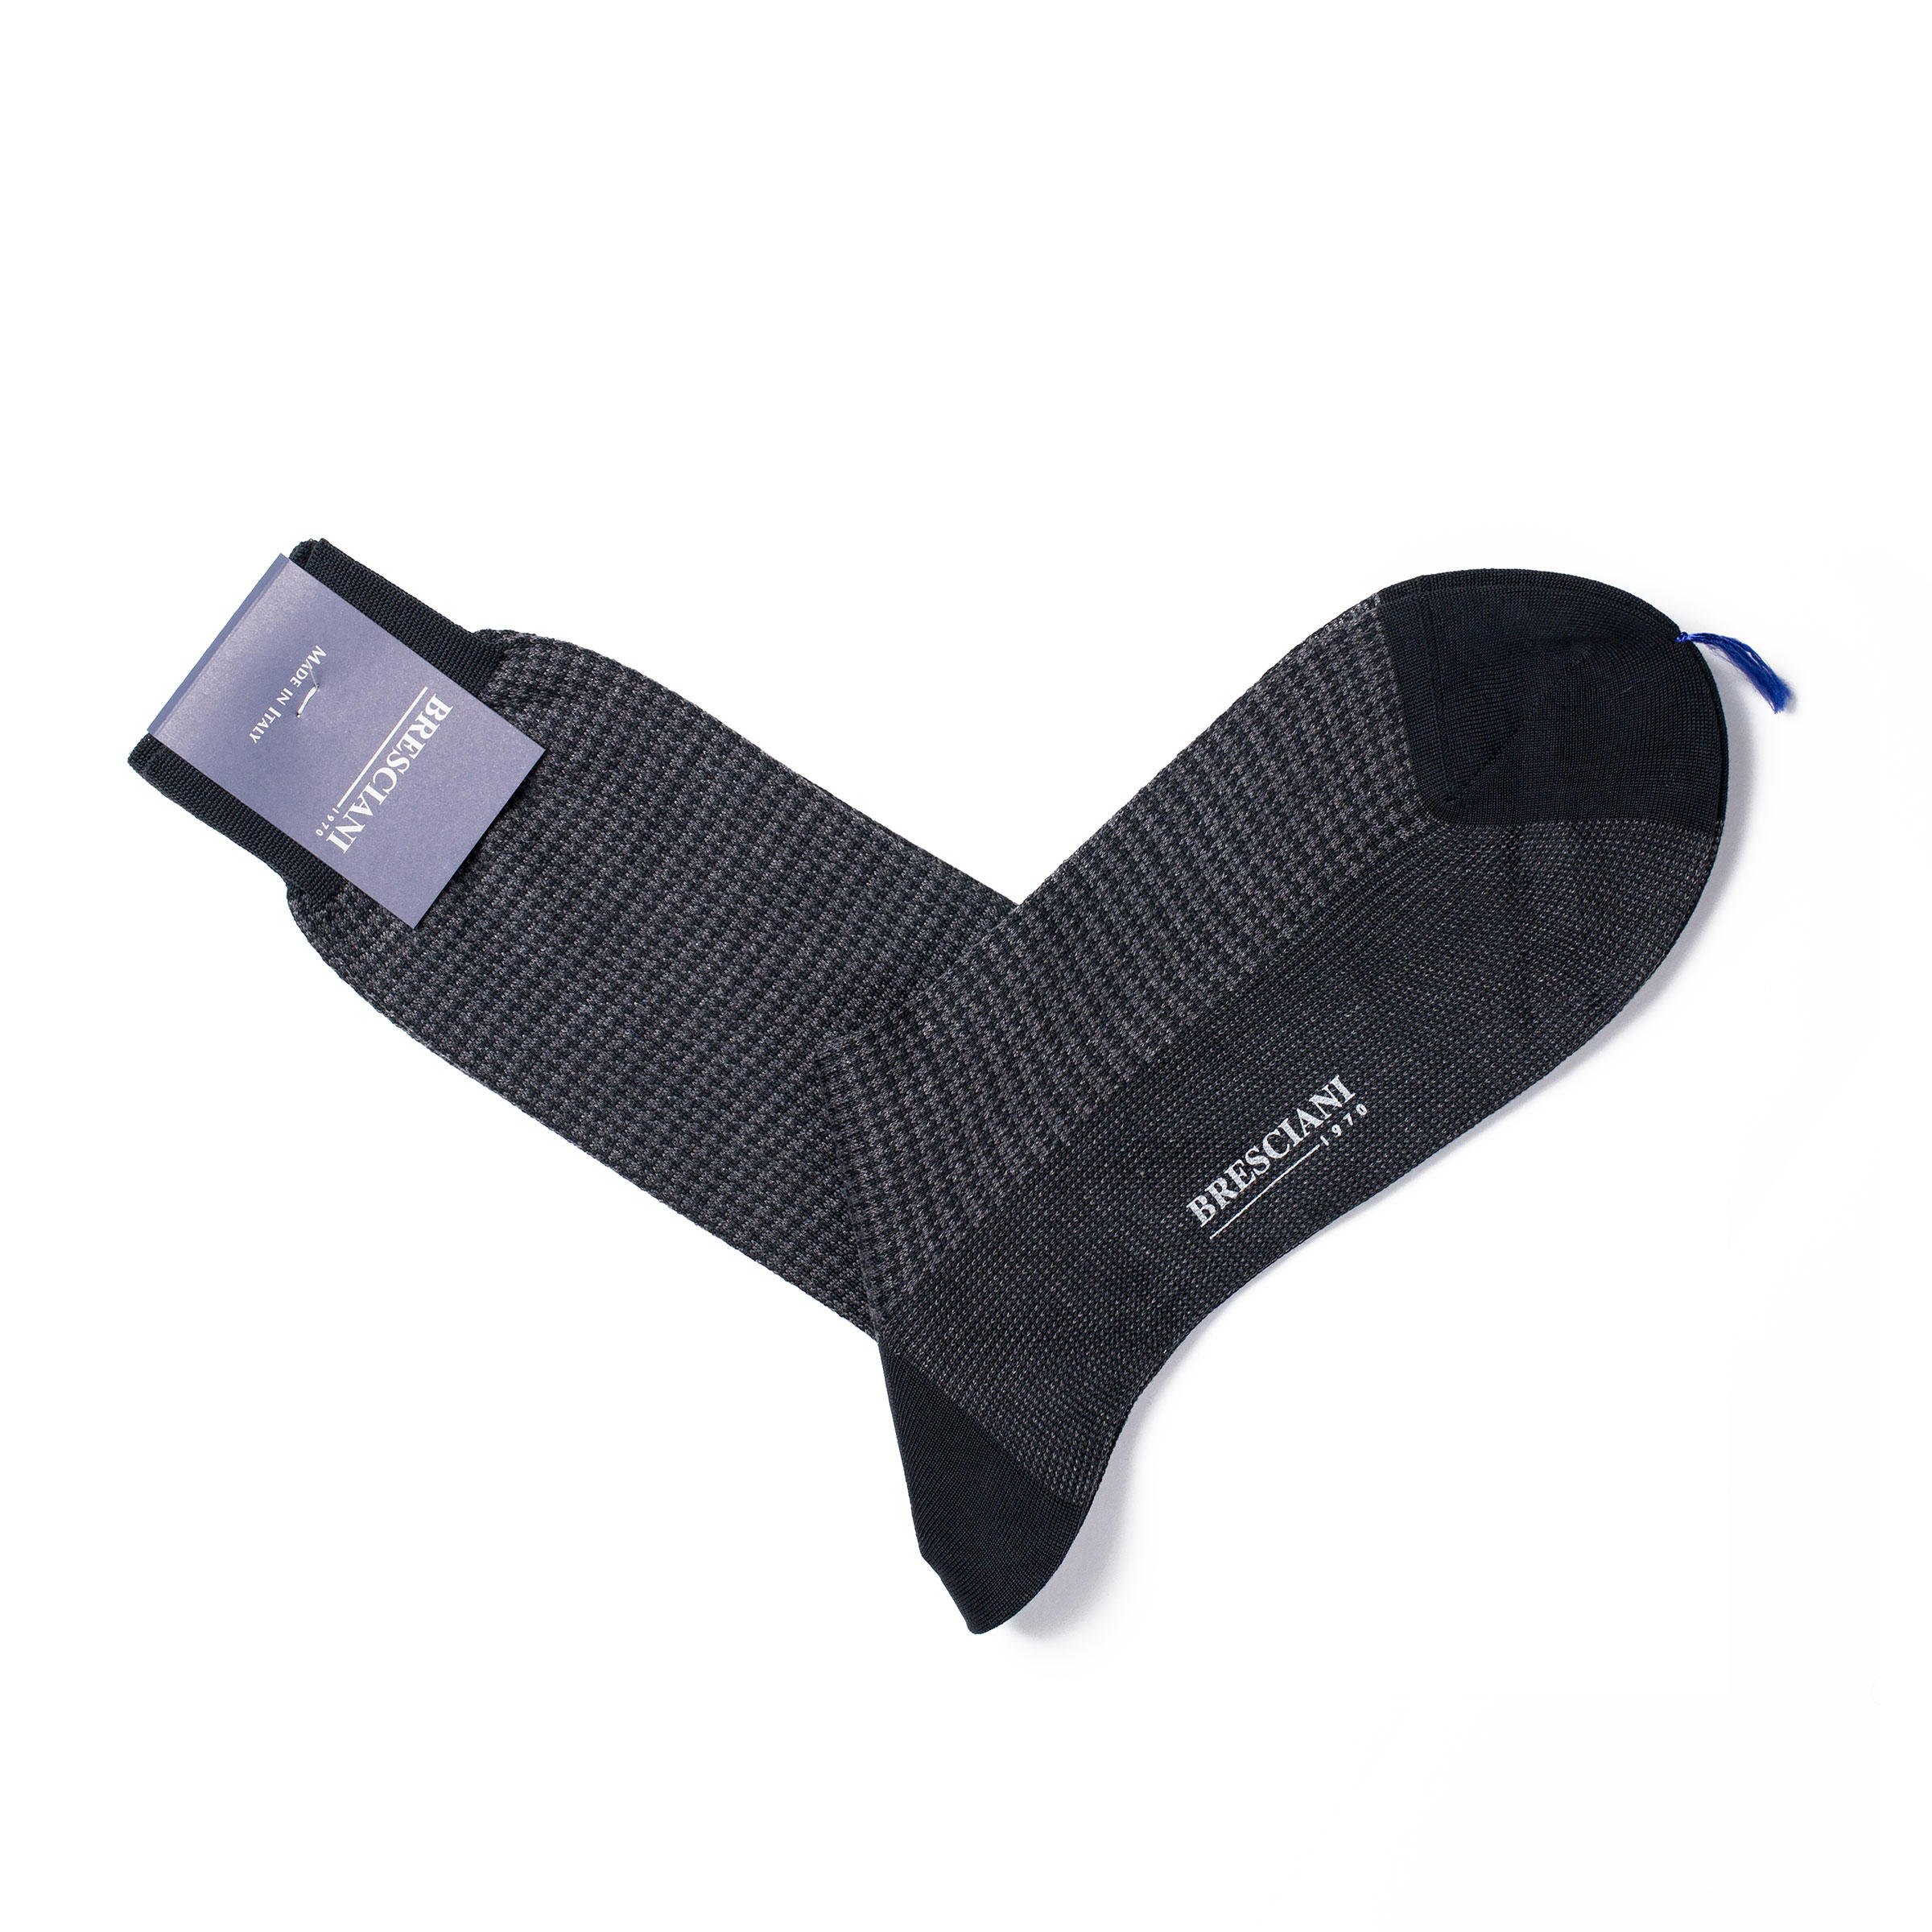 Bresciani cotton socks in grey houndstooth pattern